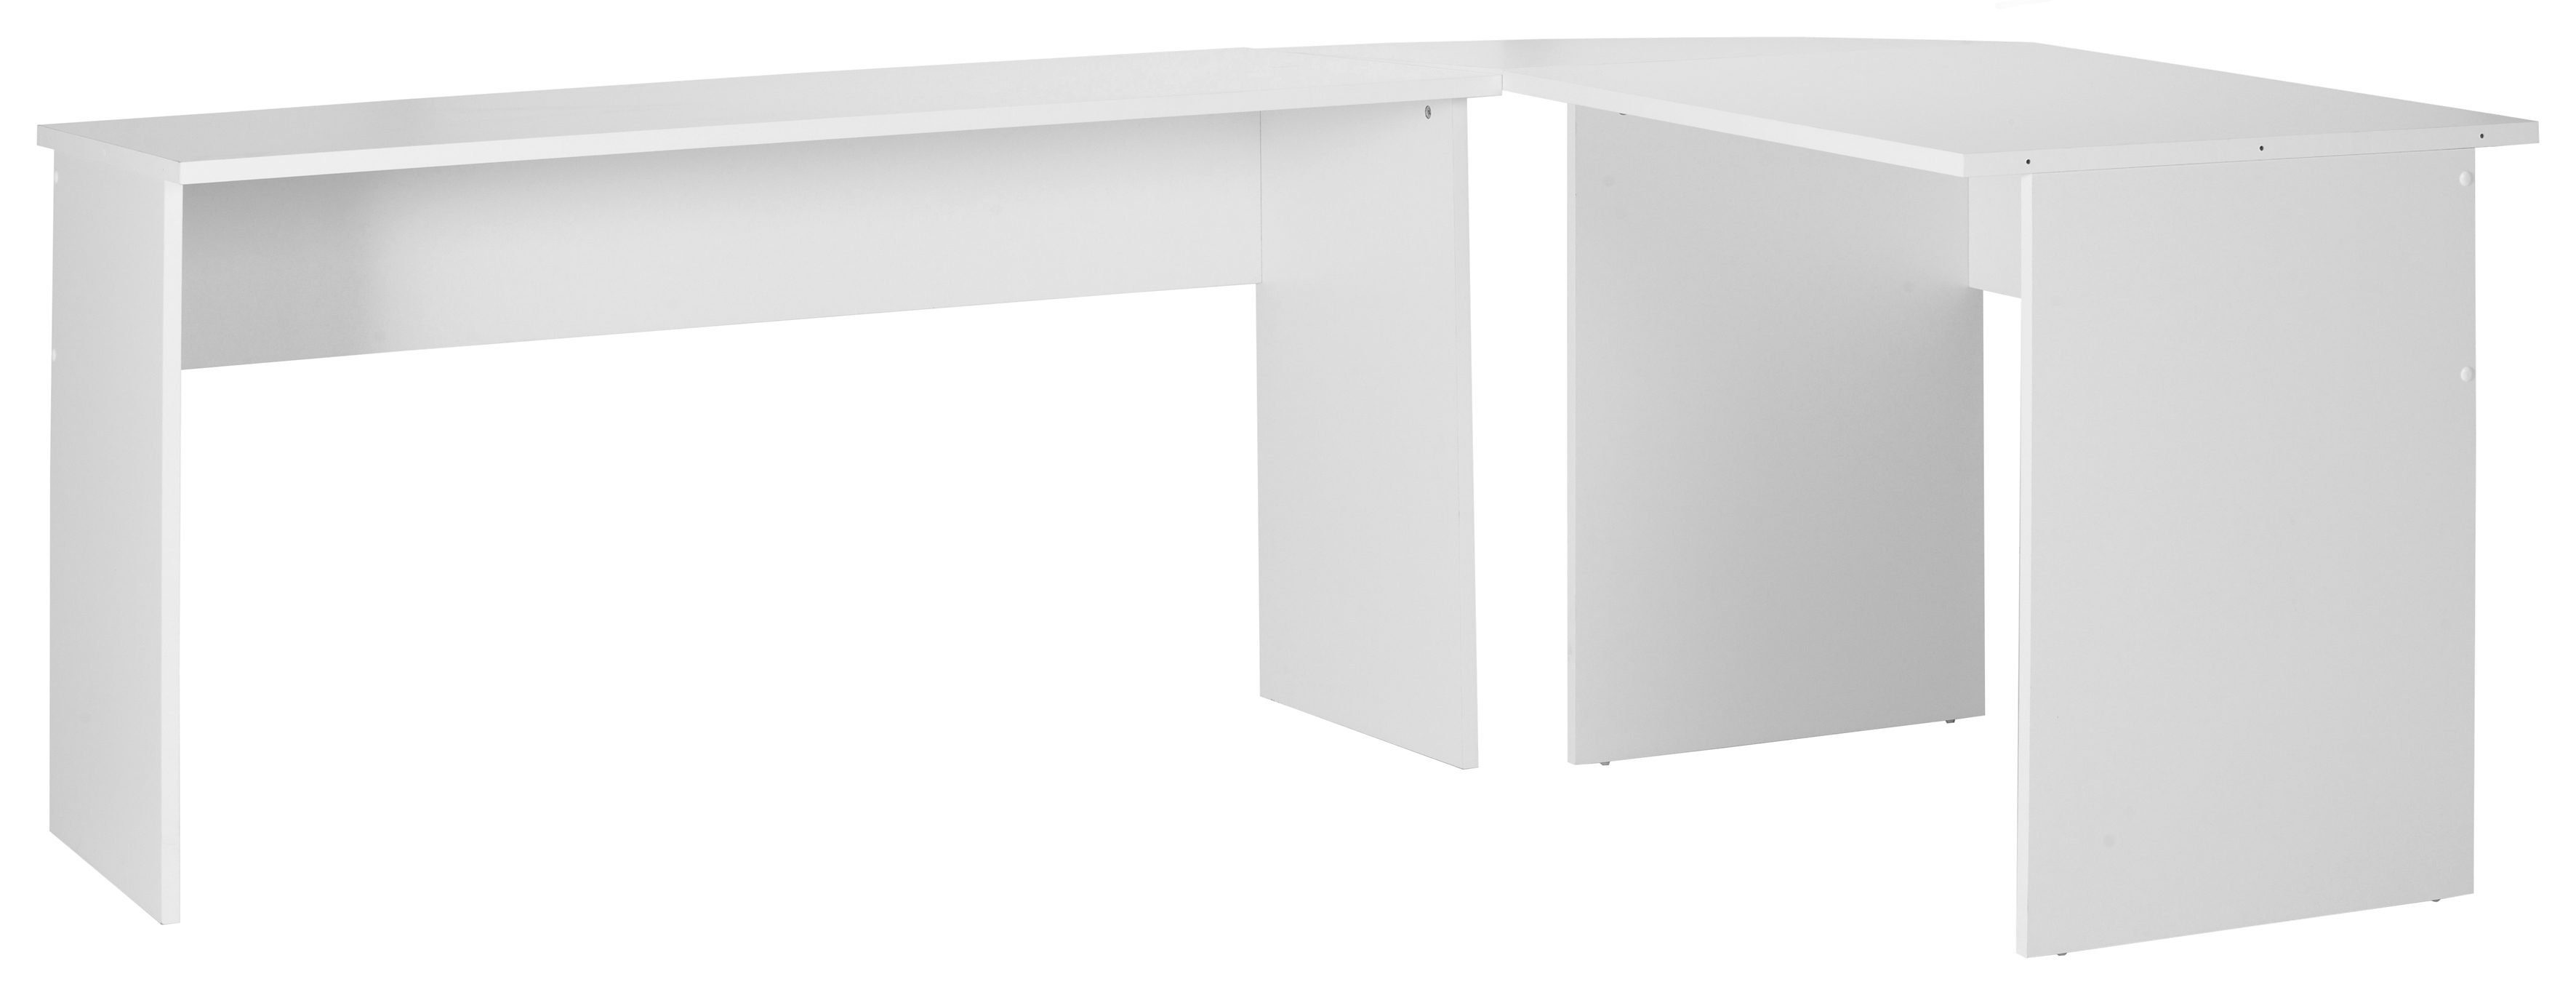 FMD Eckschreibtisch, moderner Winkel-Schreibtisch, Made in Germany, 205/155x75,4x65,0 cm weiß